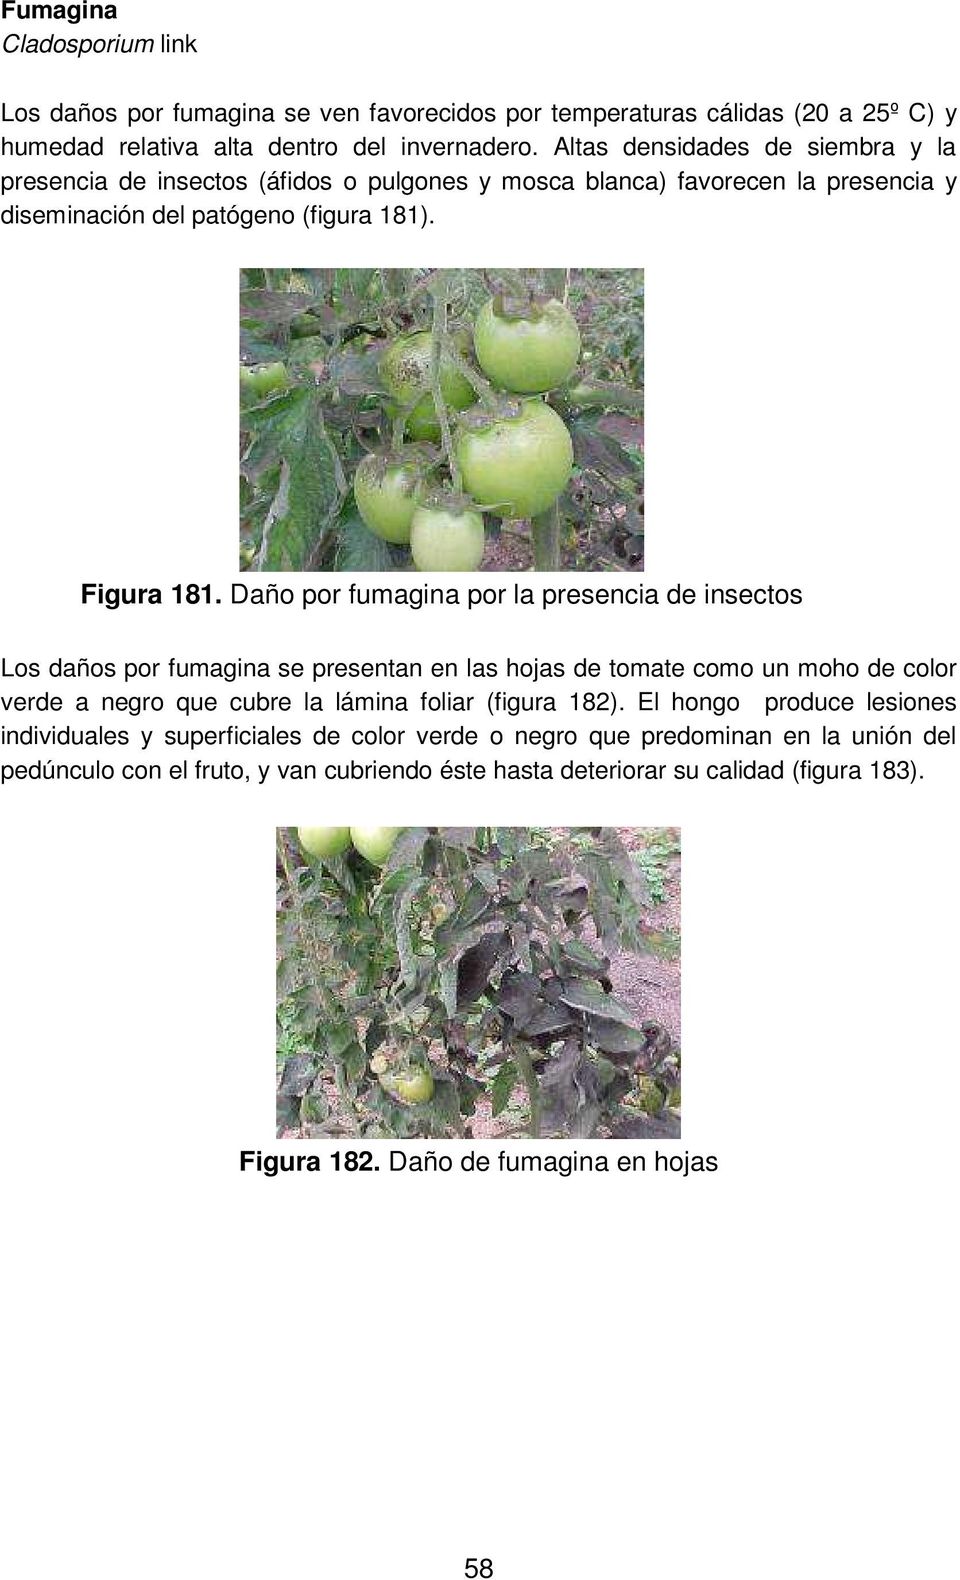 Daño por fumagina por la presencia de insectos Los daños por fumagina se presentan en las hojas de tomate como un moho de color verde a negro que cubre la lámina foliar (figura 182).